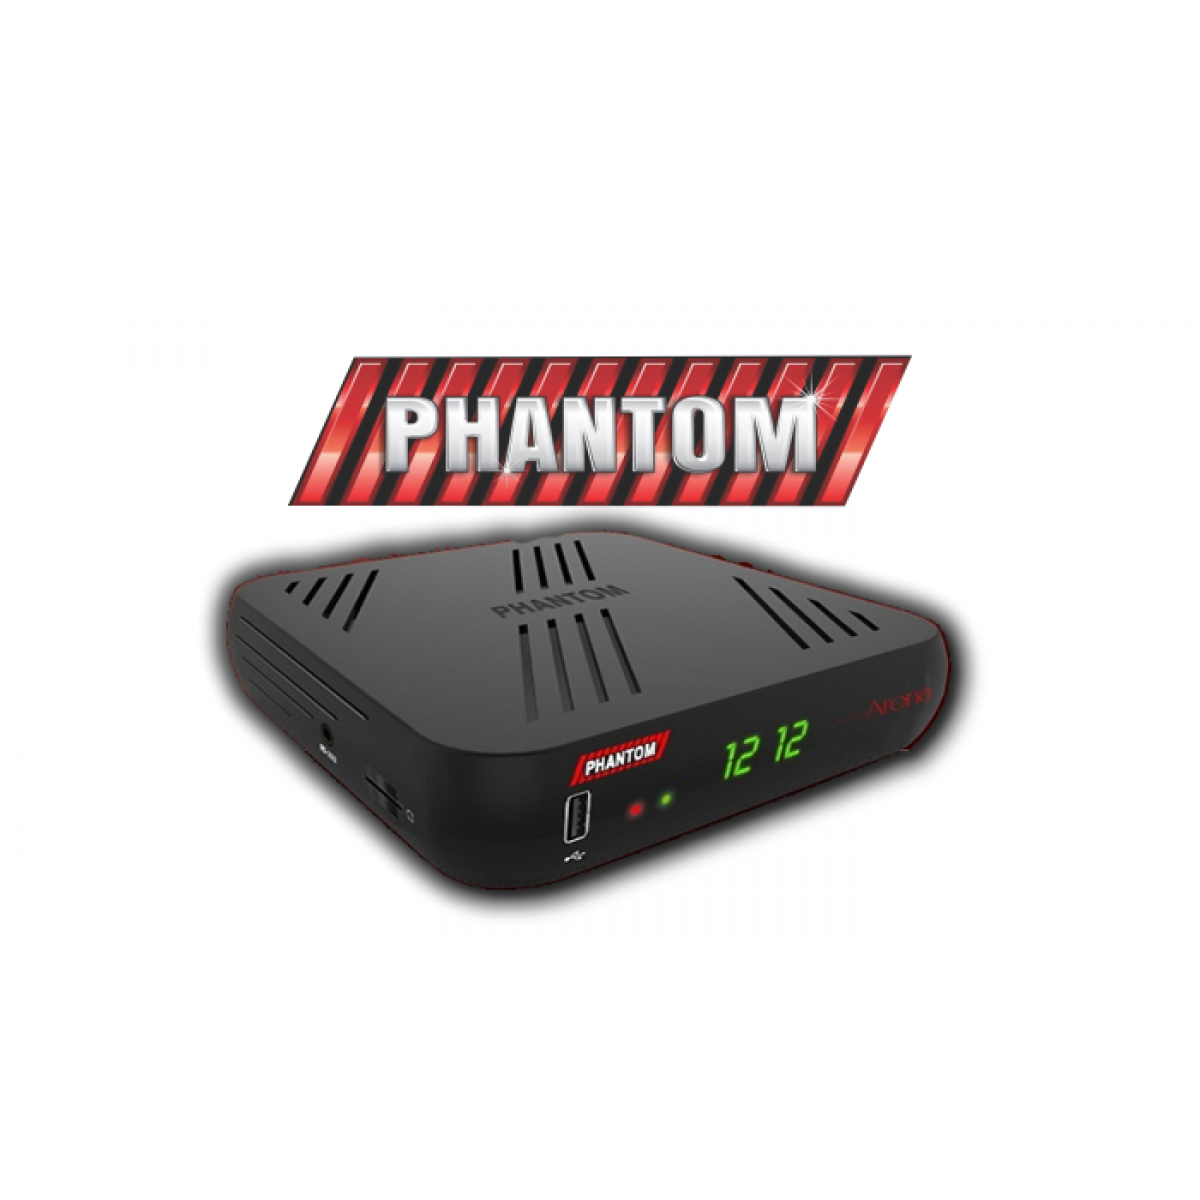 Phantom Arena - On Demand HD IPTV 1080p Iks sks